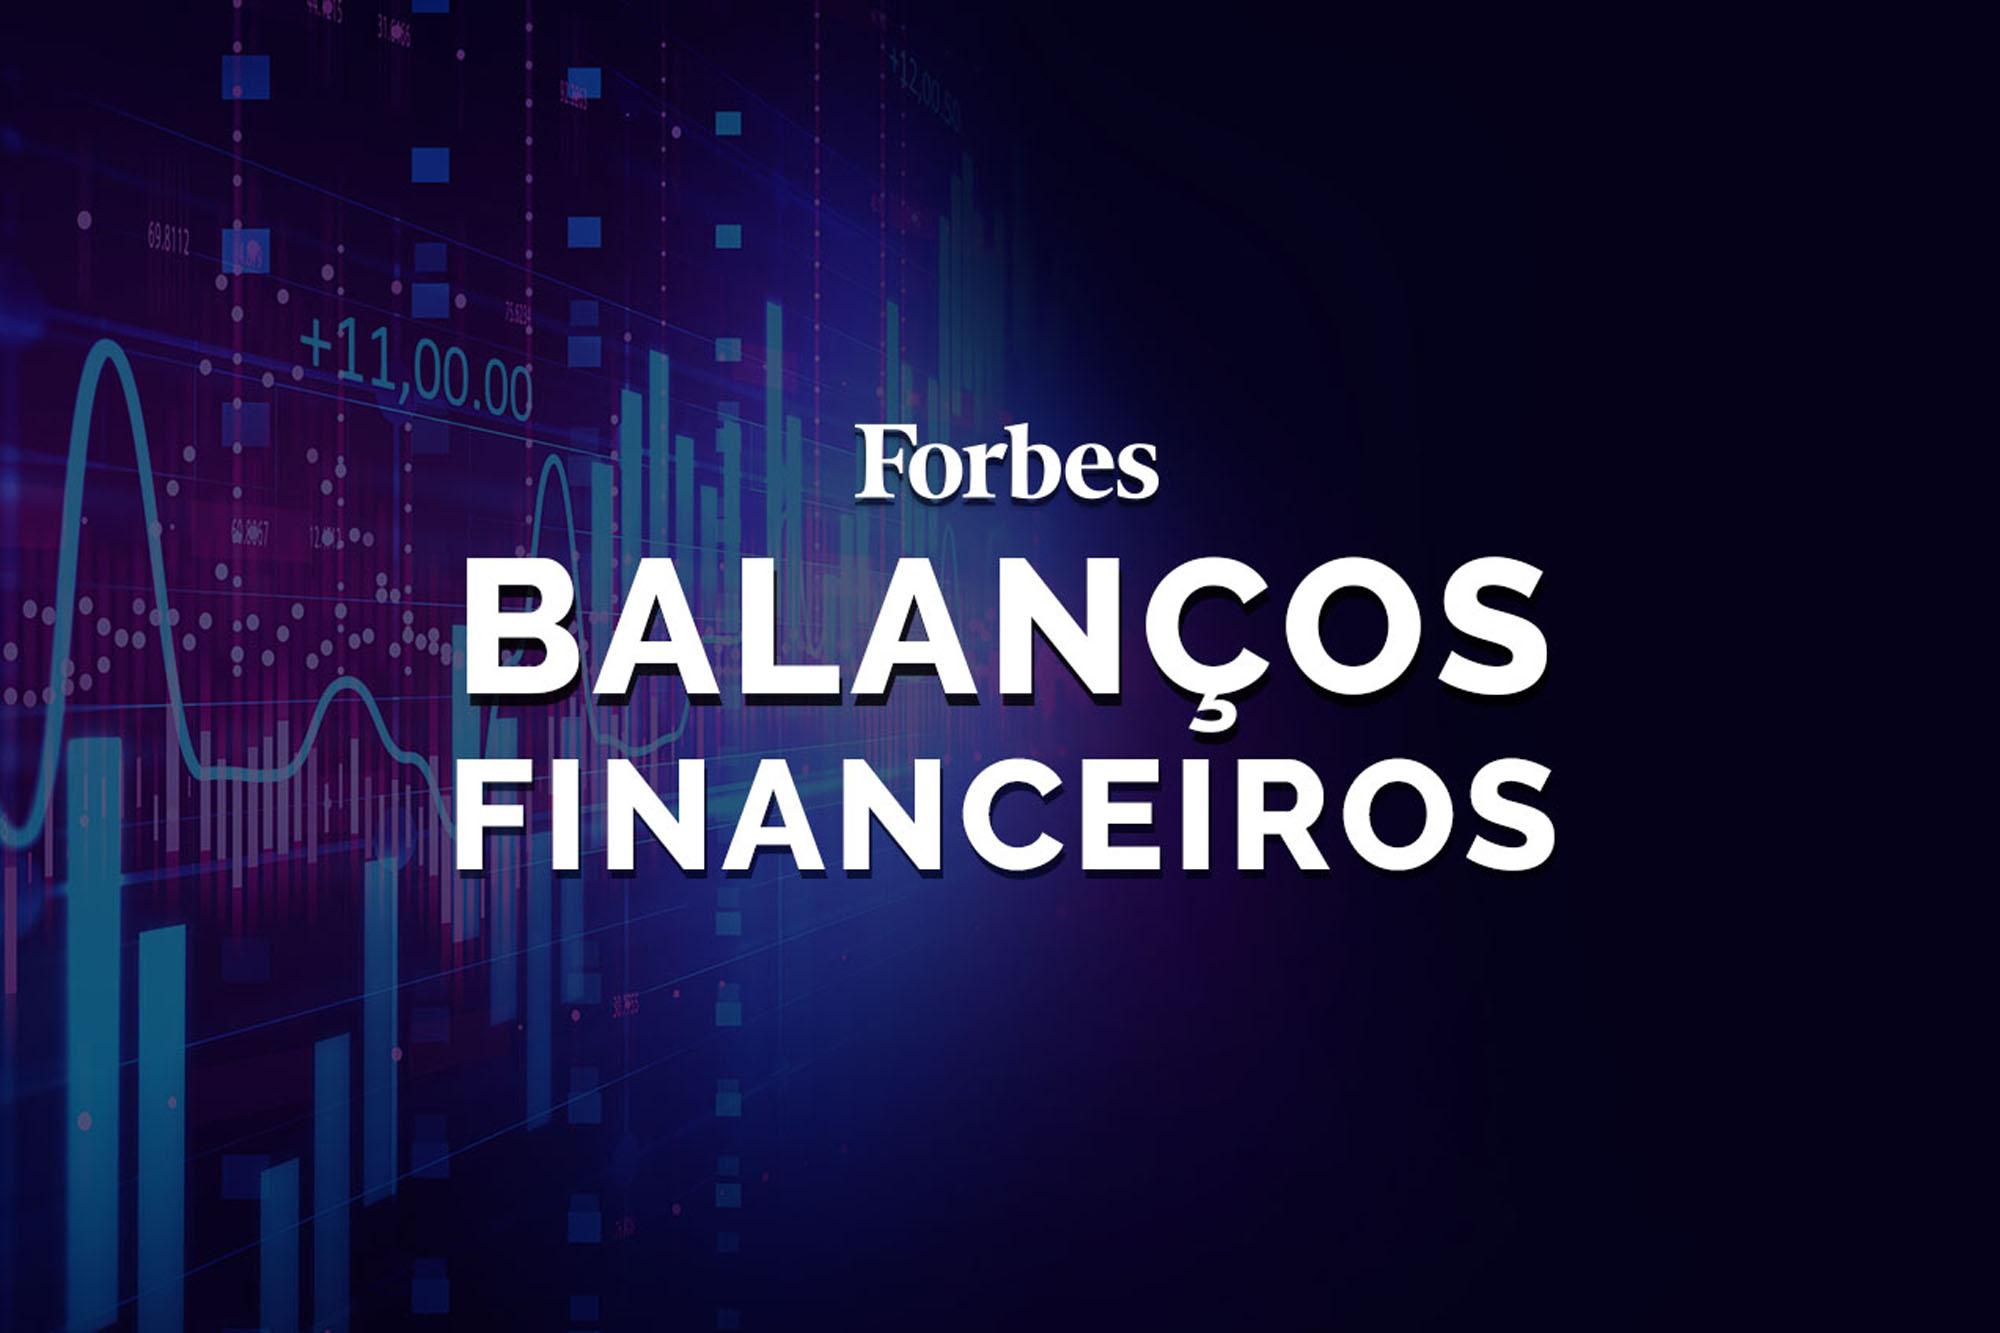 BalançosFinanceiros/ForbesUSA